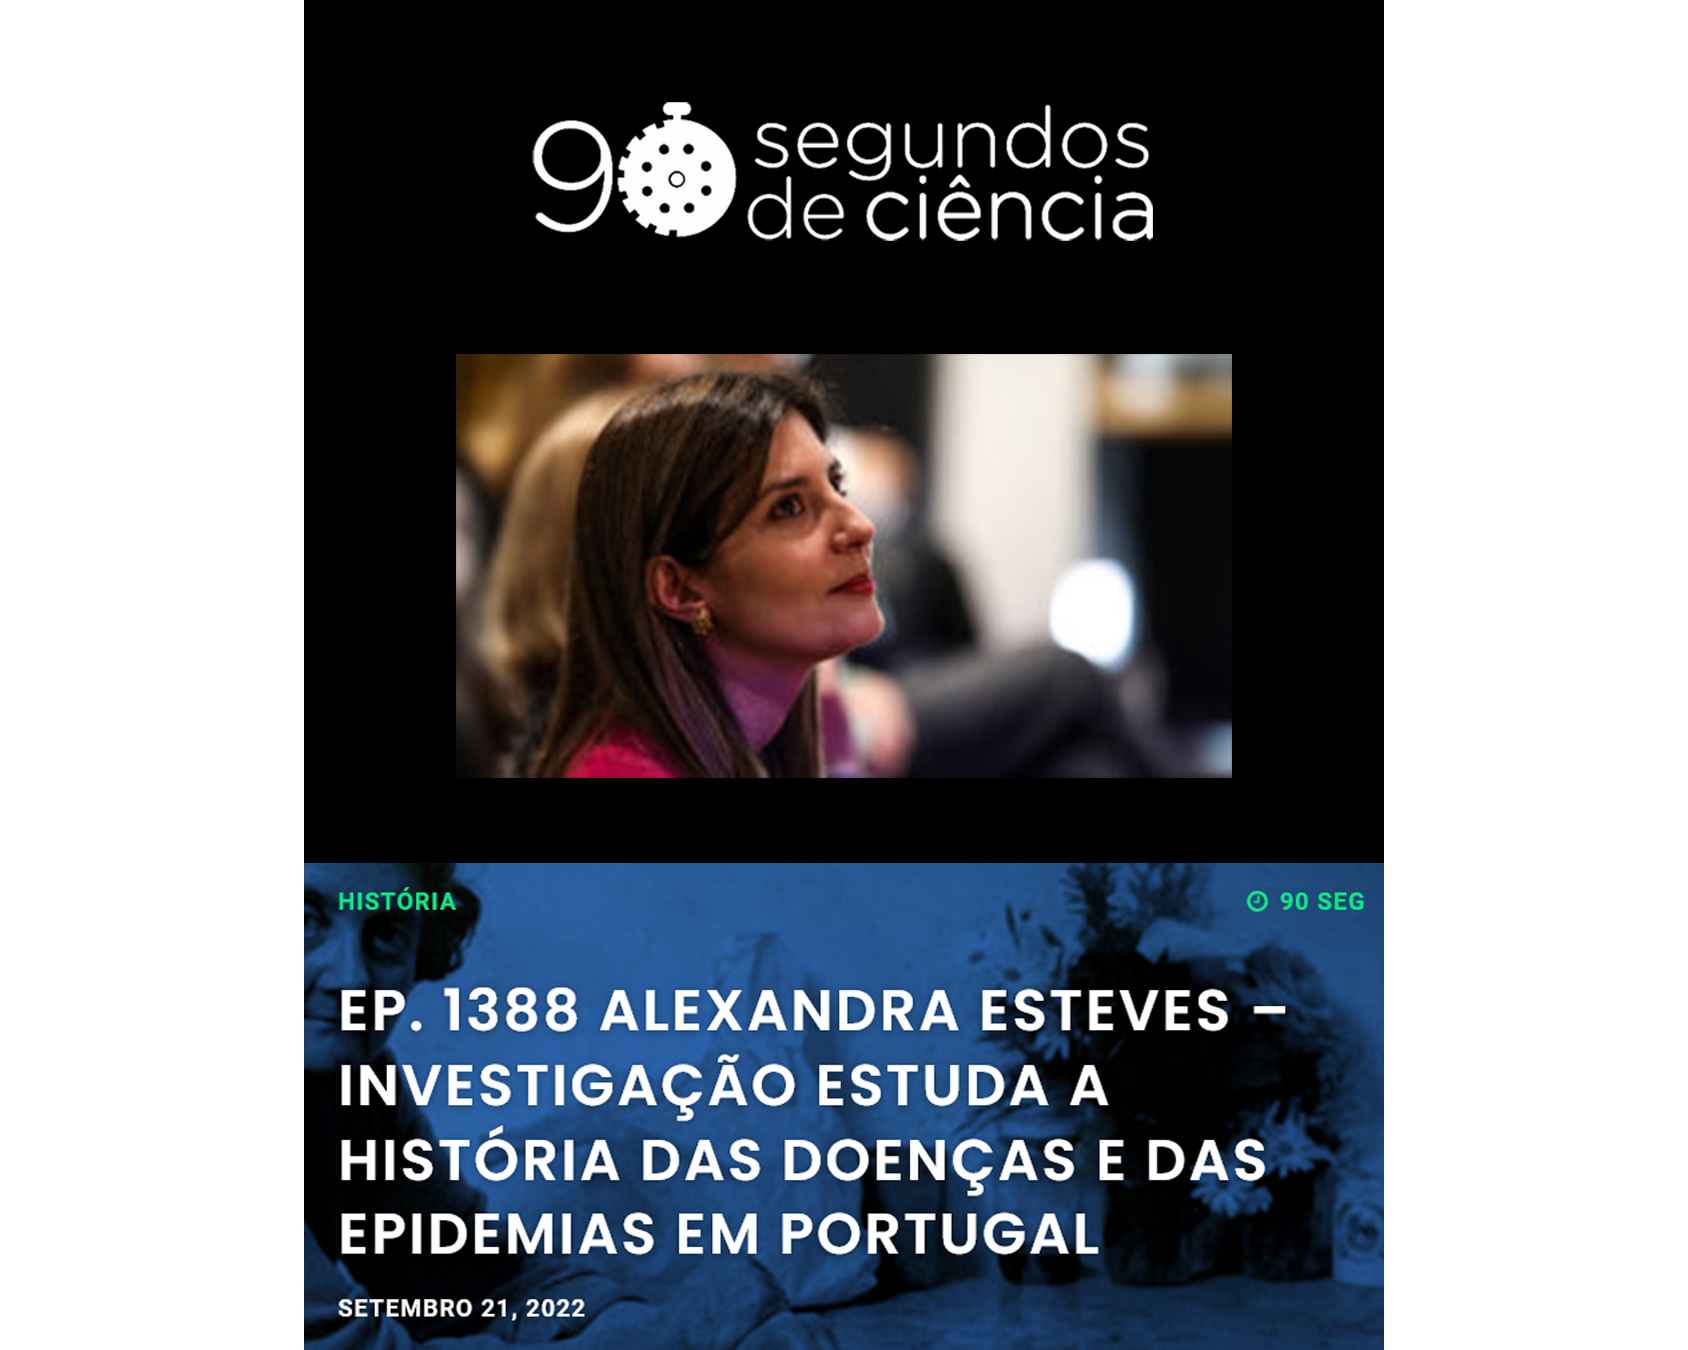 Alexandra Esteves – Investigação estuda a História das doenças e das epidemias em Portugal image